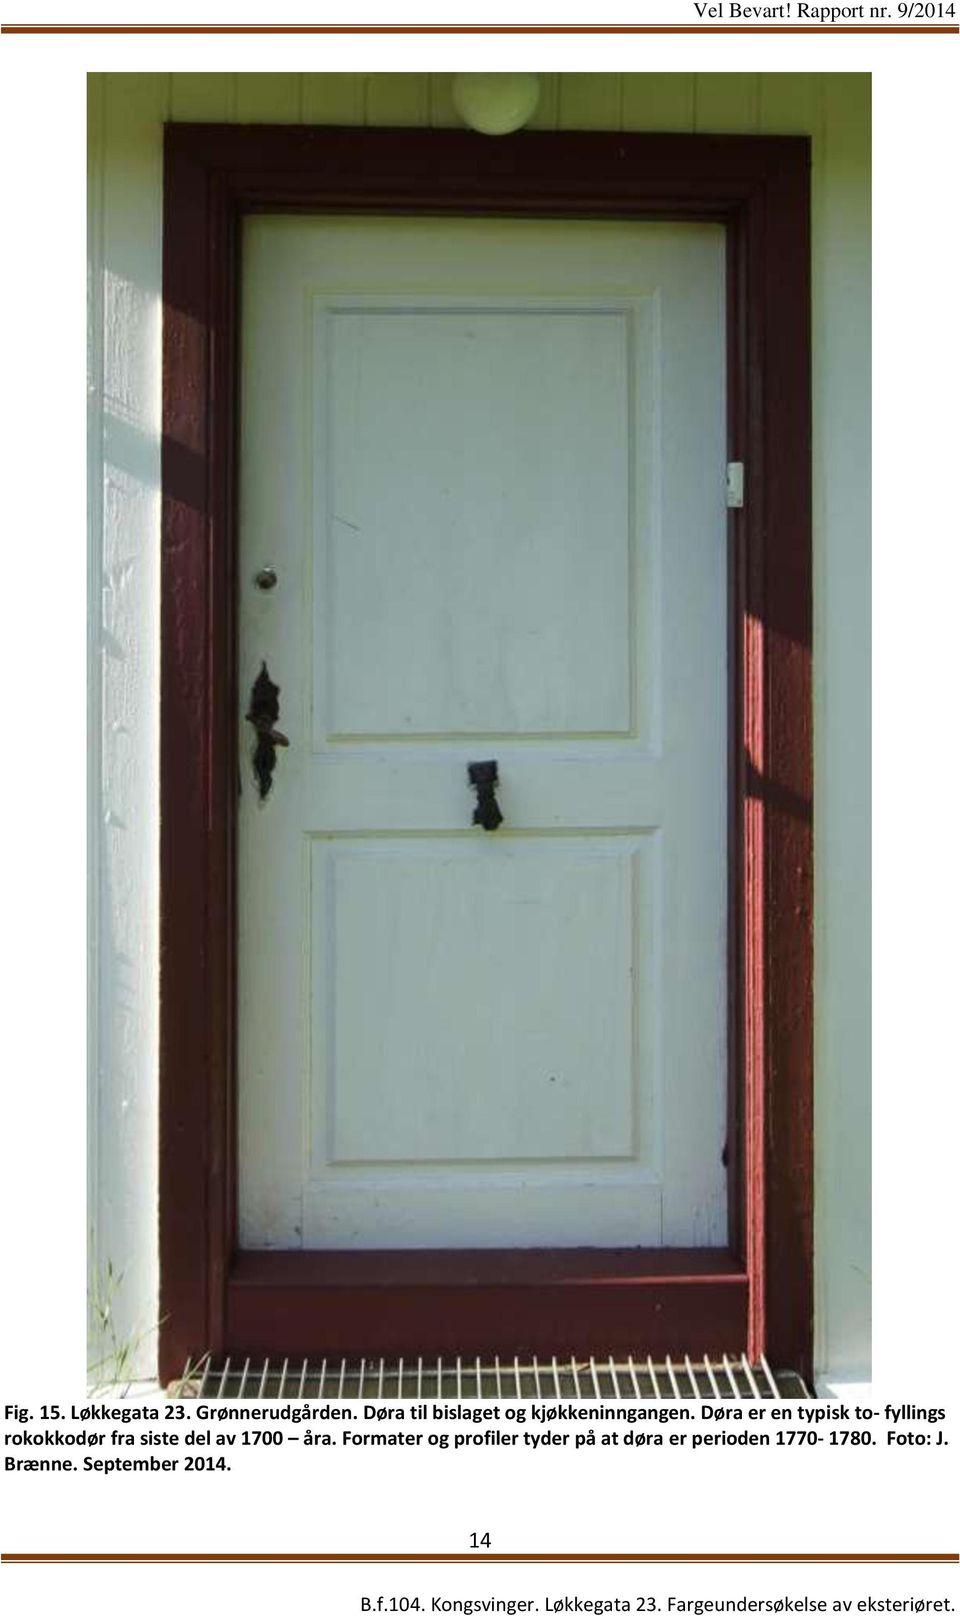 Døra er en typisk to- fyllings rokokkodør fra siste del av